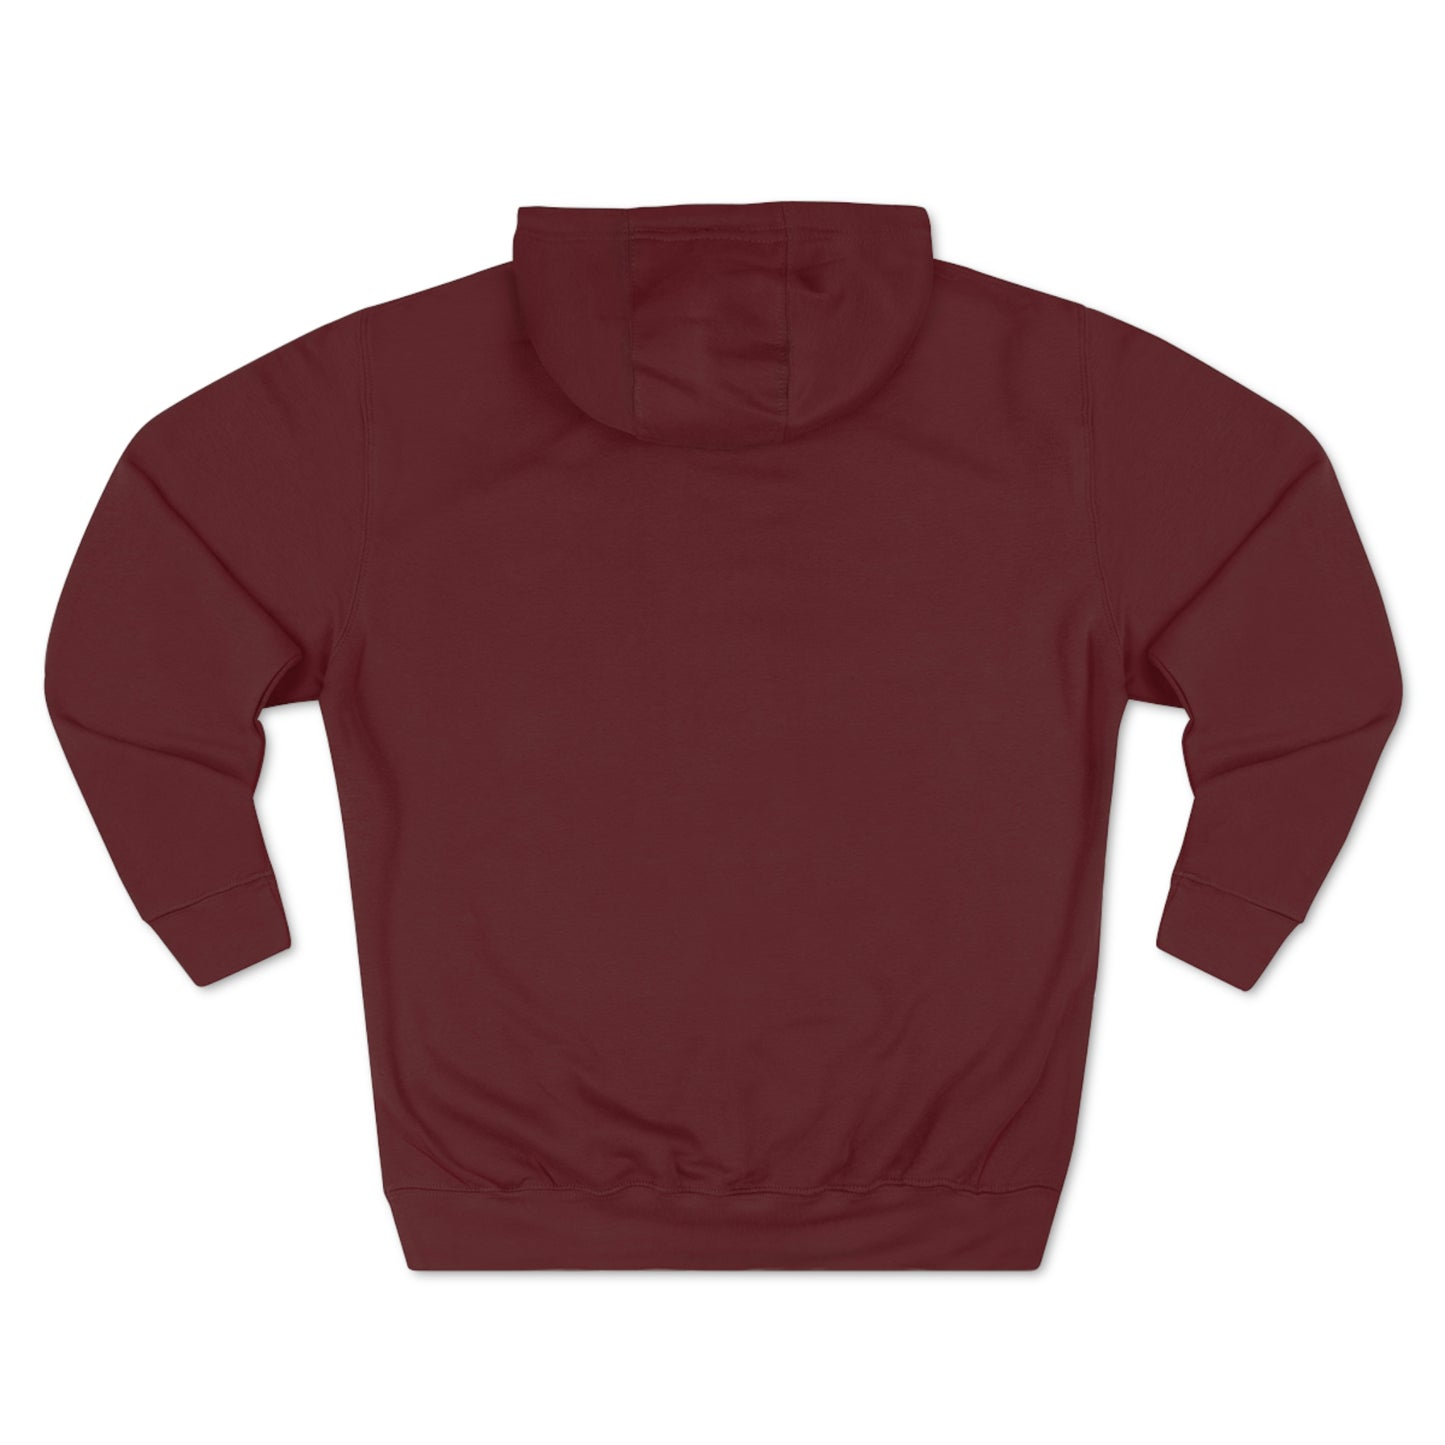 Deinopis logo - Unisex Premium Pullover Hoodie